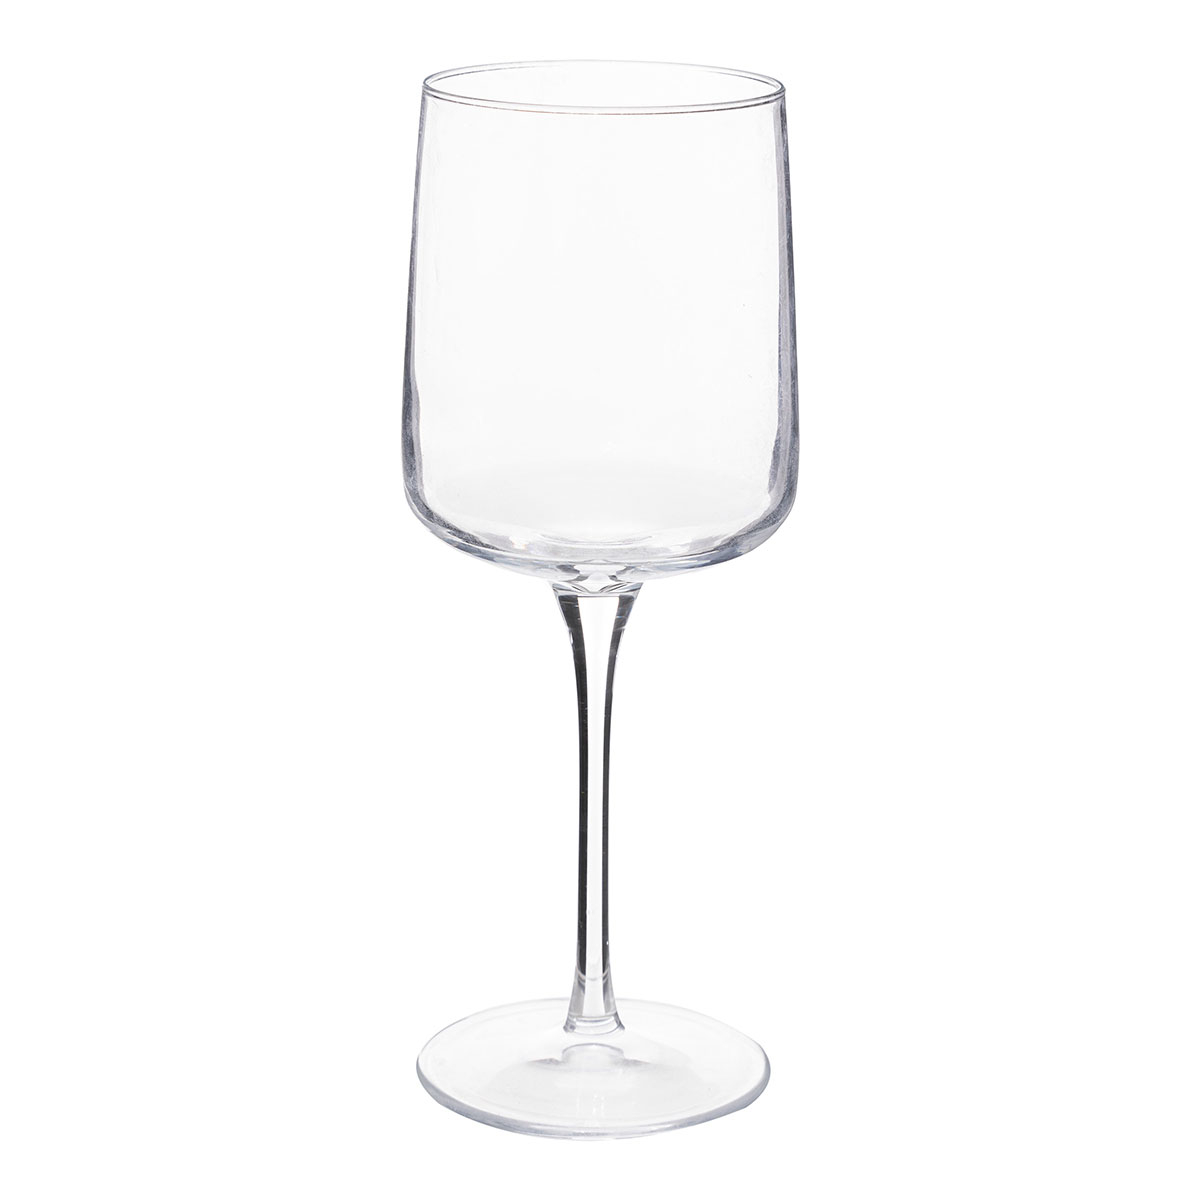 Ποτήρι Κρασιού Κολωνάτο 340ml S-D Flora 188858